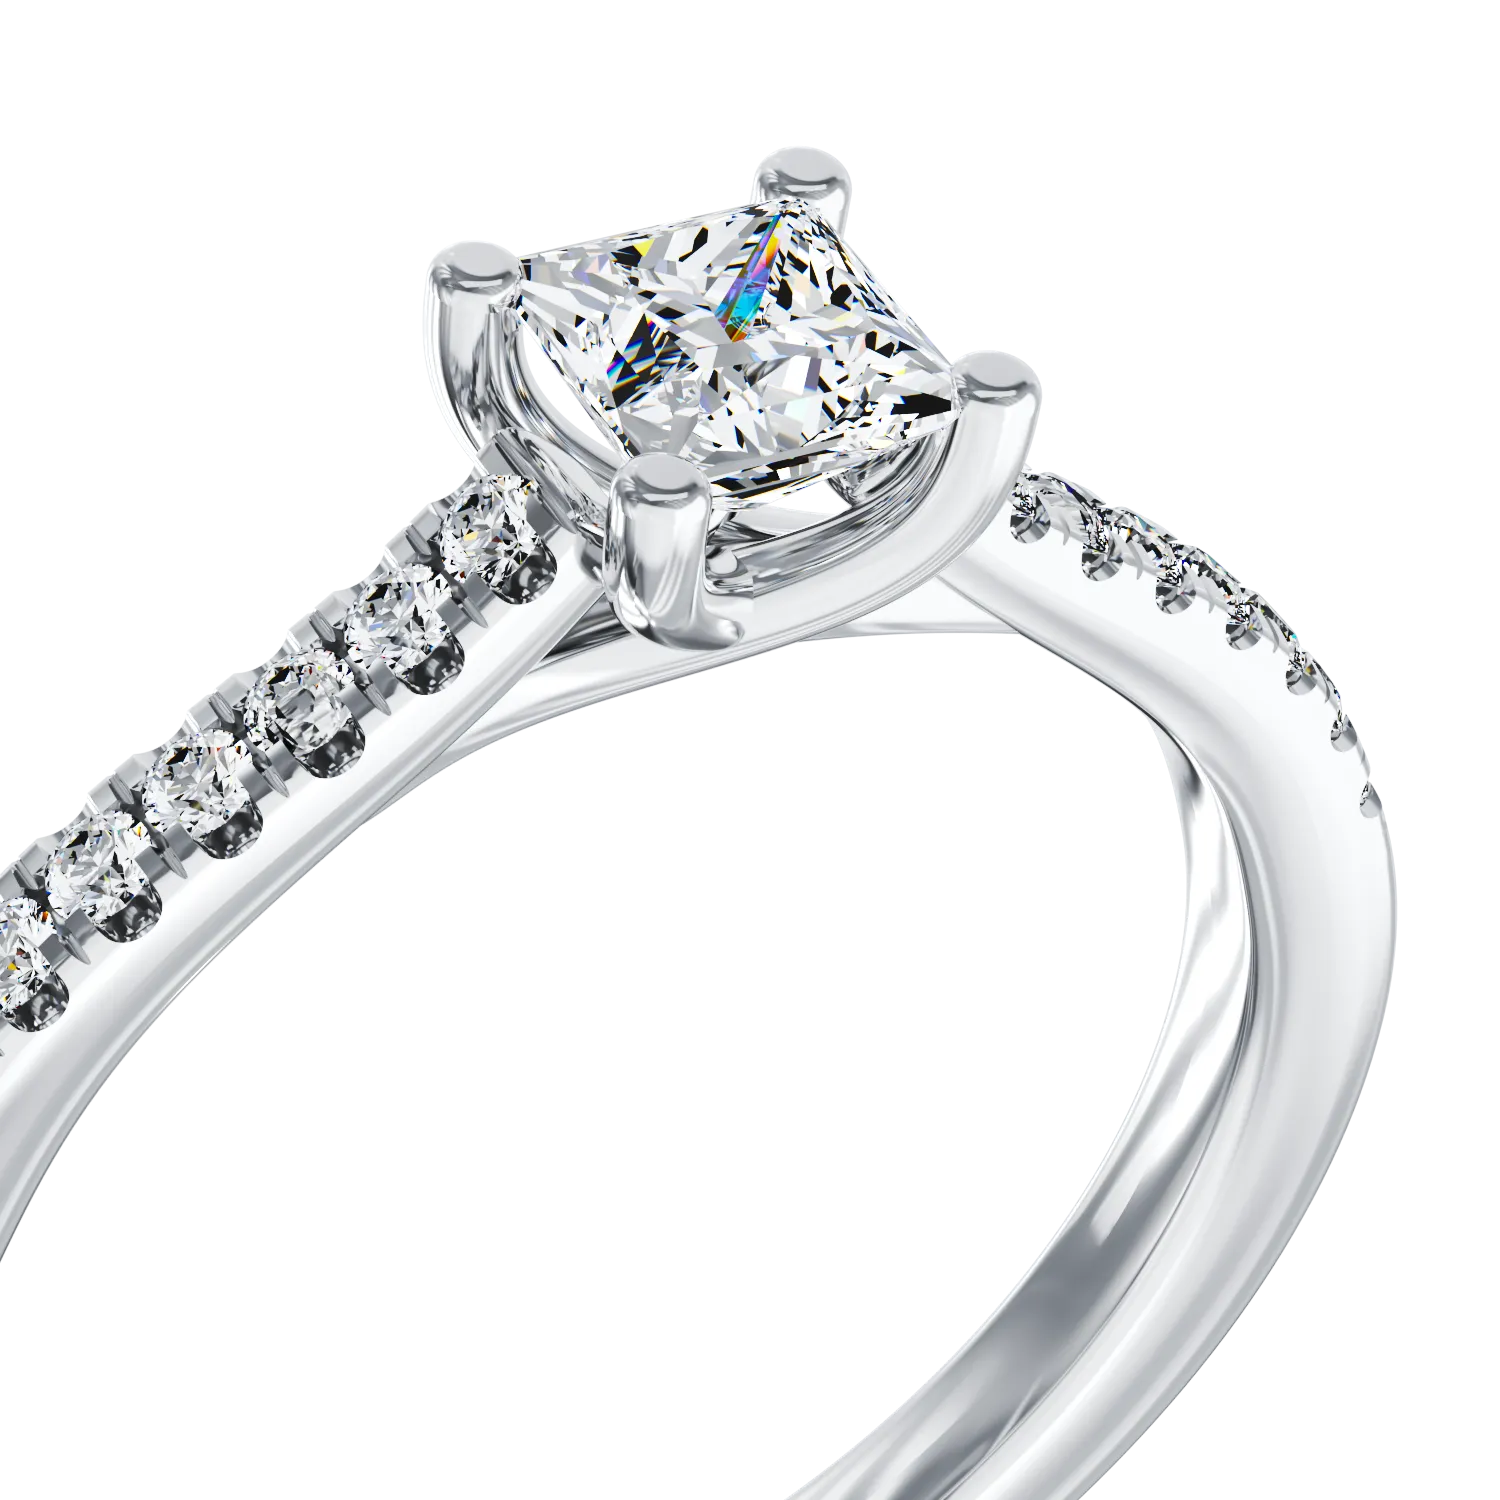 Eljegyzési gyűrű 18K-os fehér aranyból 0,45ct gyémánttal és 0,17ct gyémánttal